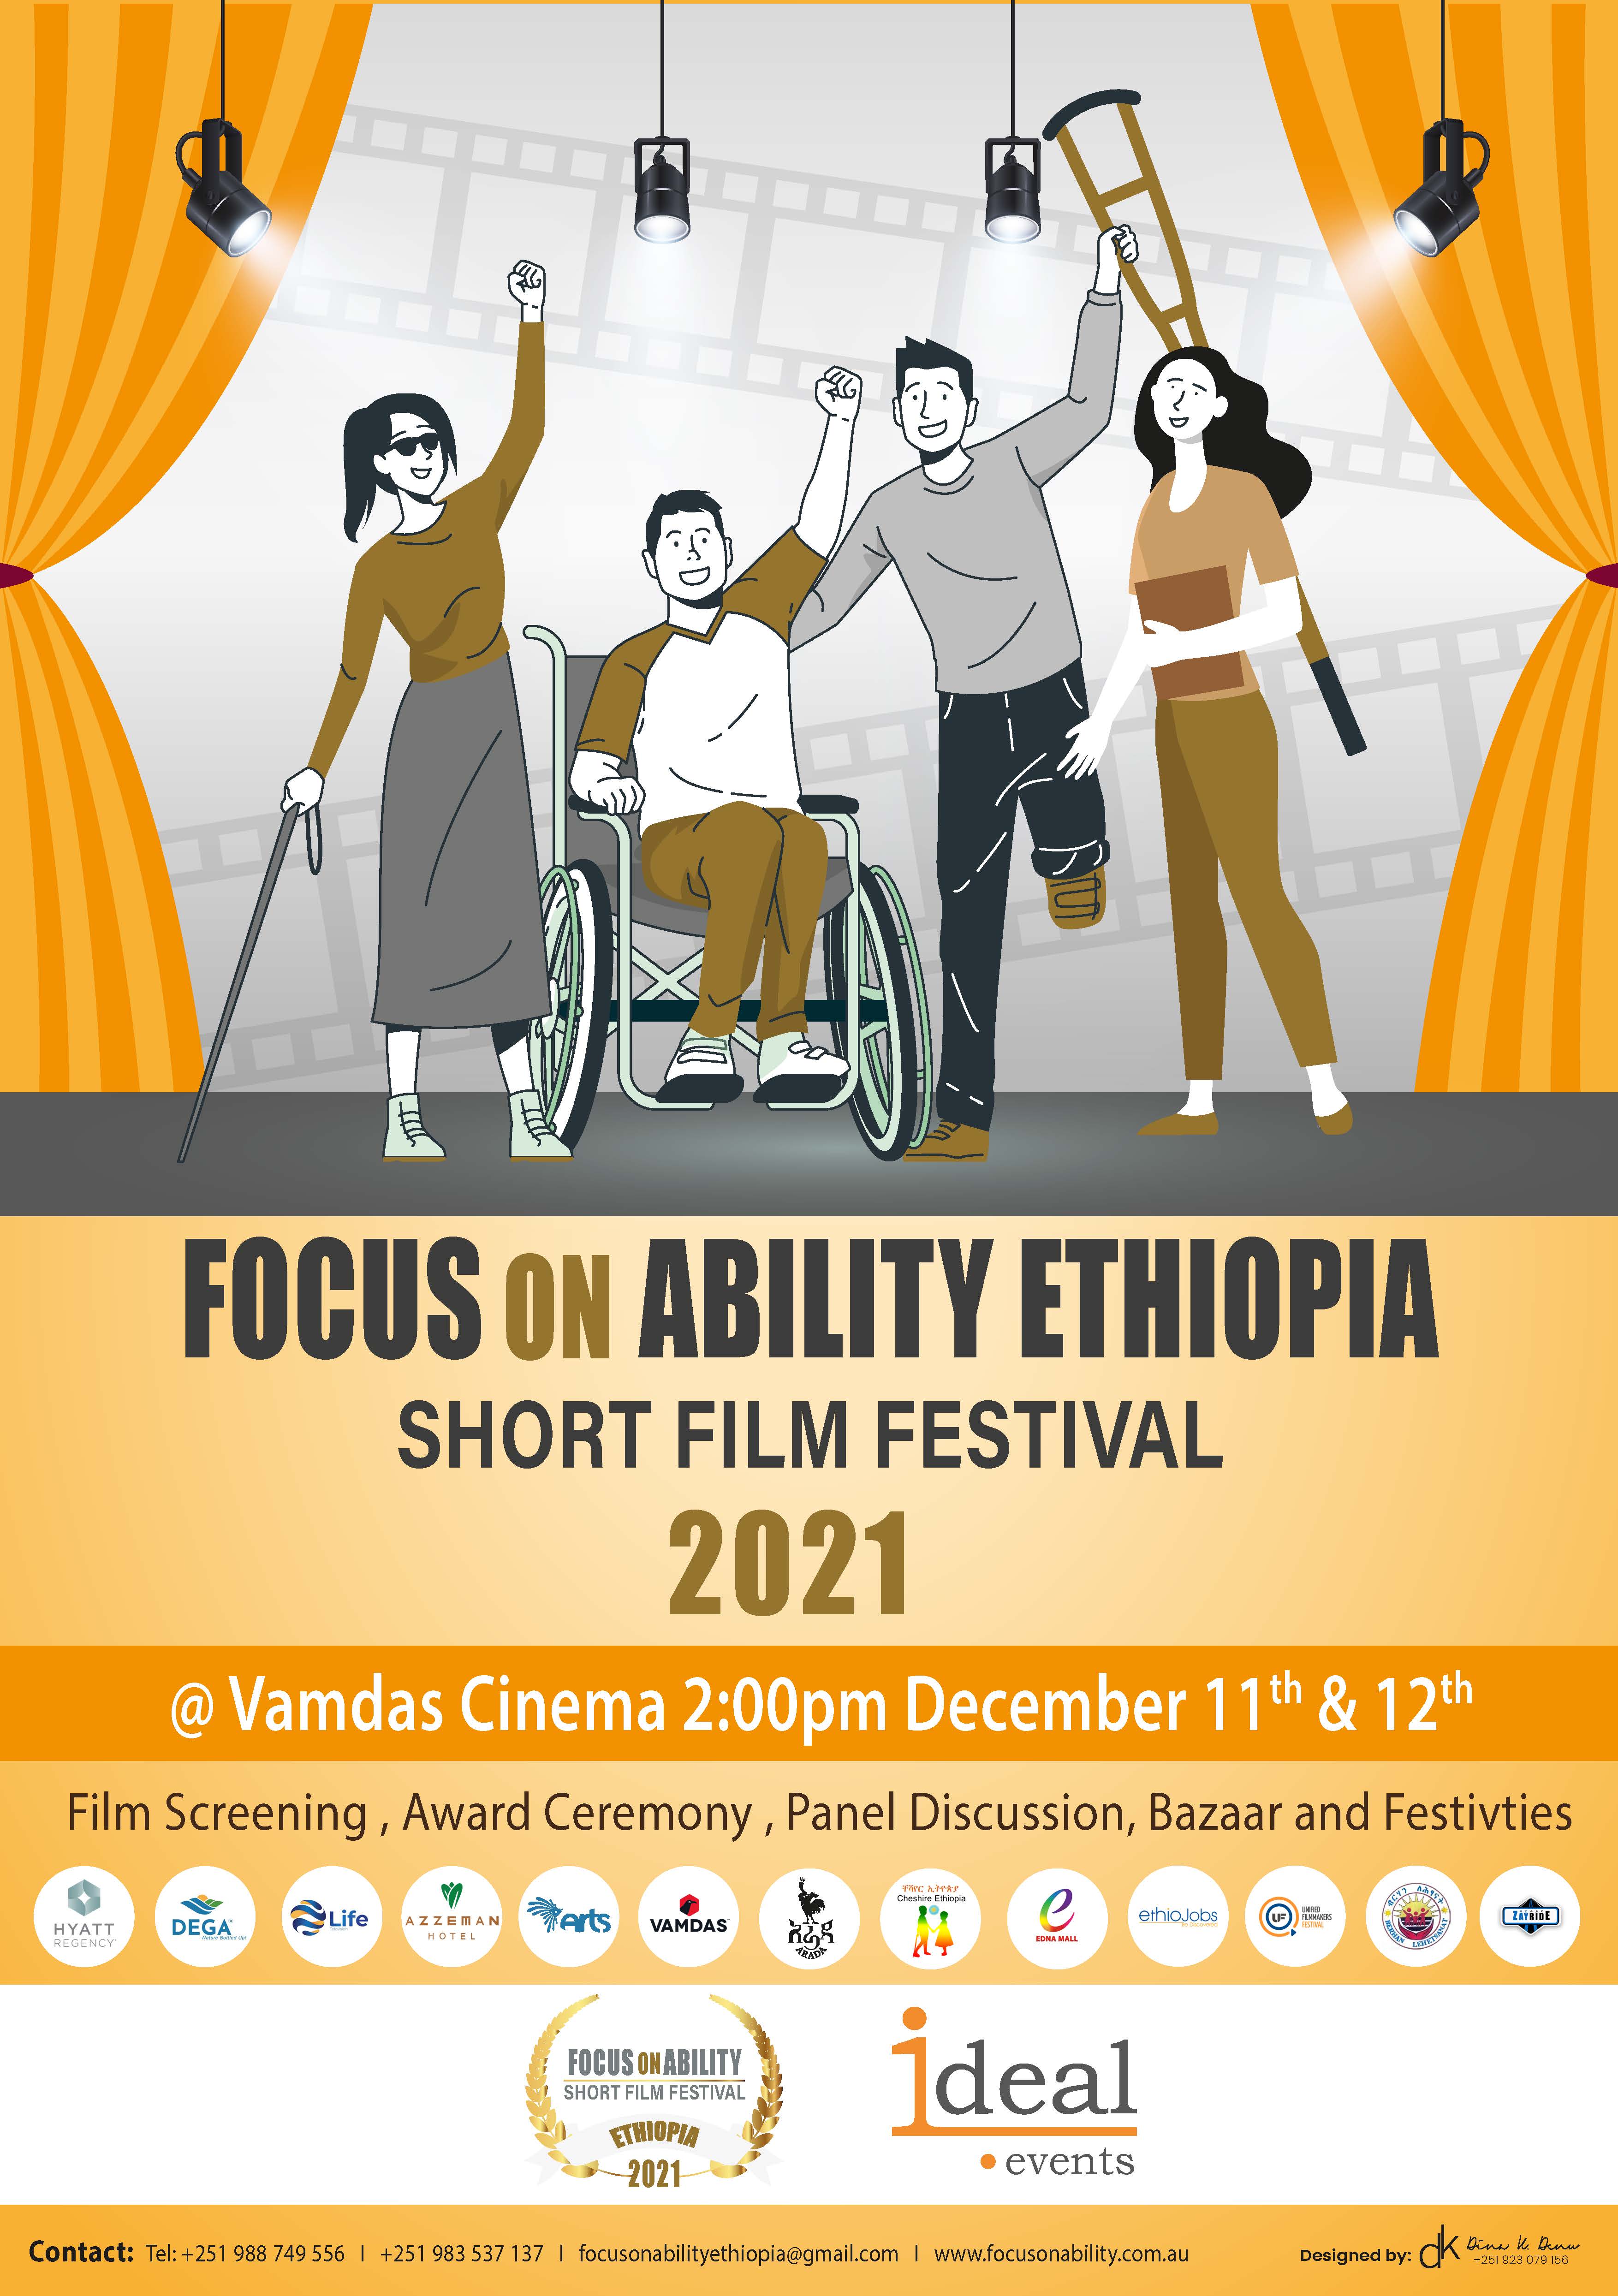 Short Film Festival 2021:  Focus on Ability Ethiopia